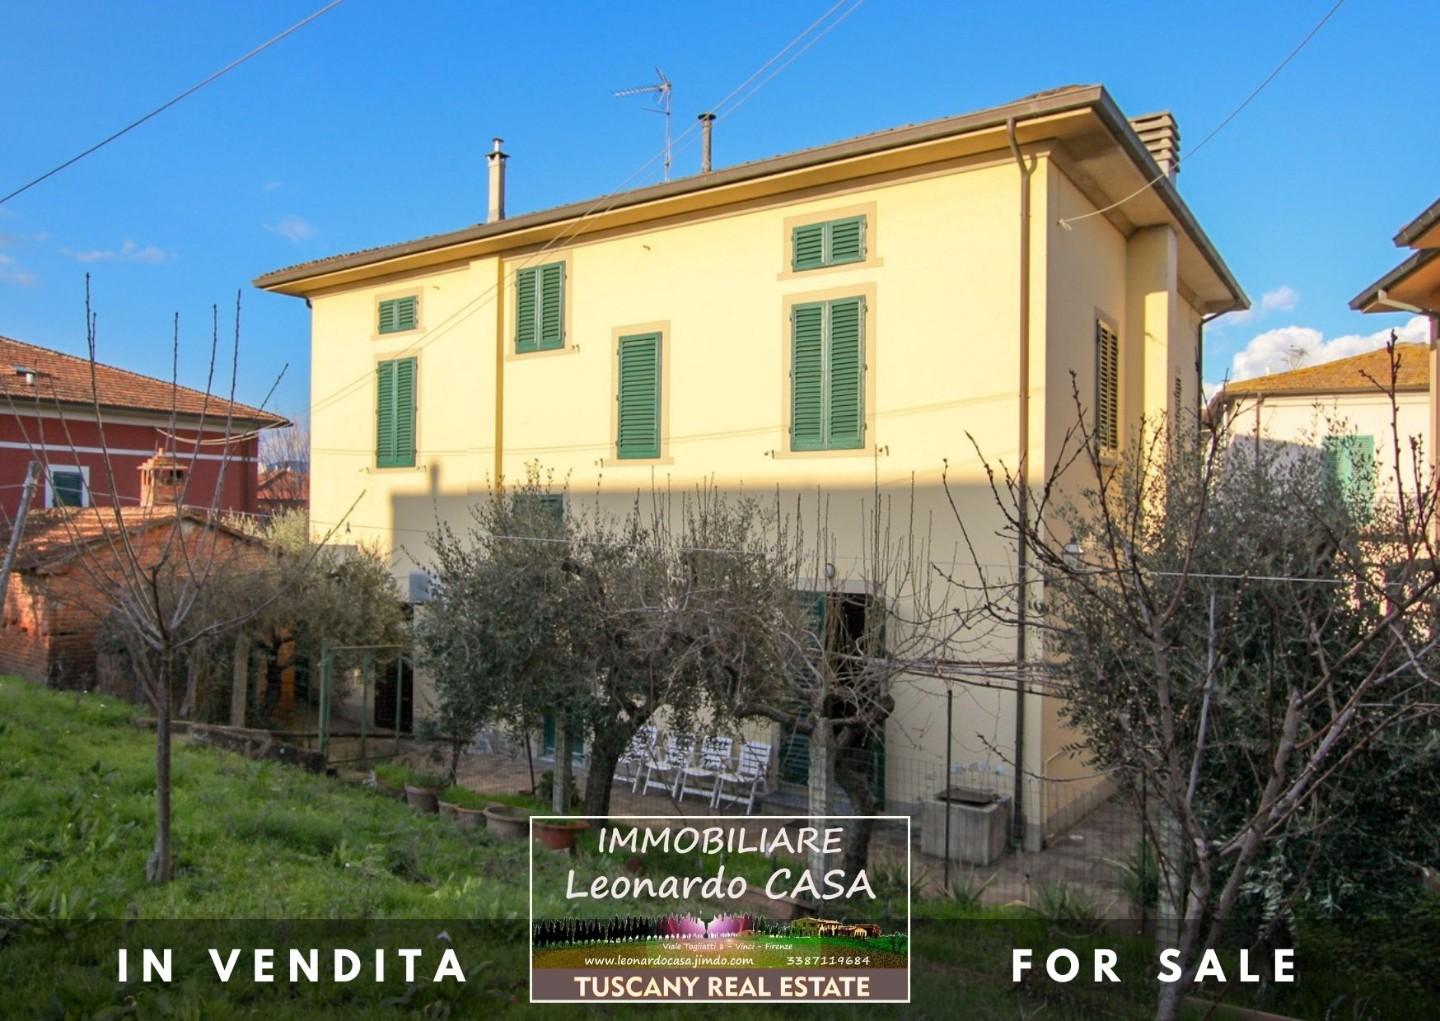 Villa in vendita a Lamporecchio, 8 locali, prezzo € 285.000 | PortaleAgenzieImmobiliari.it